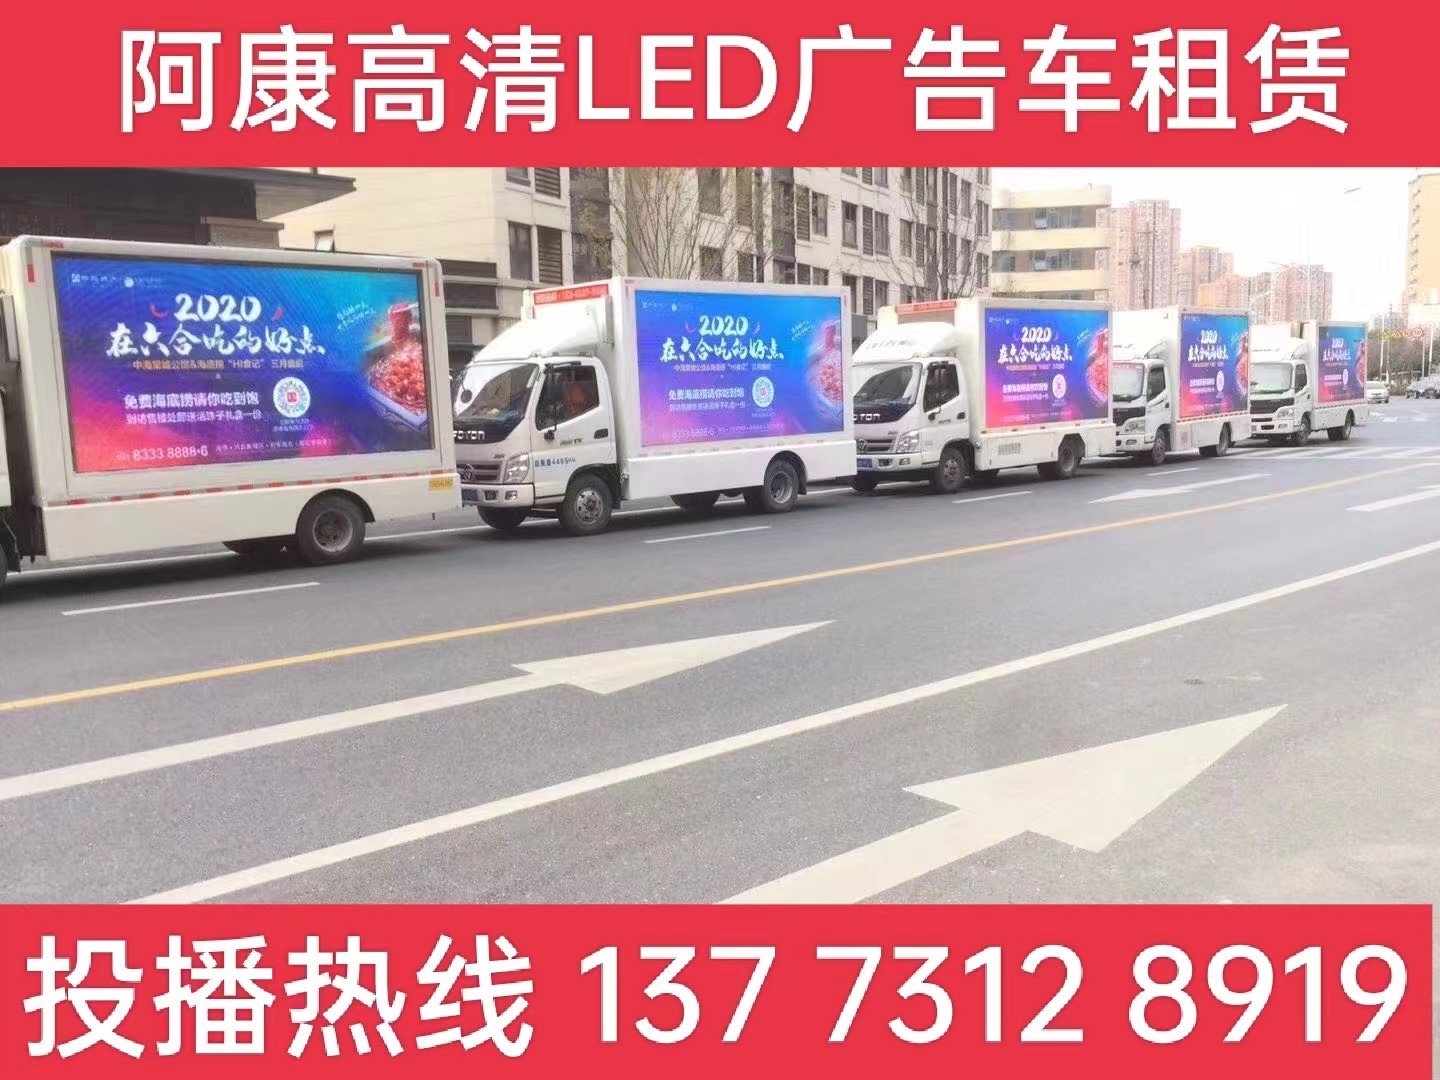 邗江区宣传车出租-海底捞LED广告